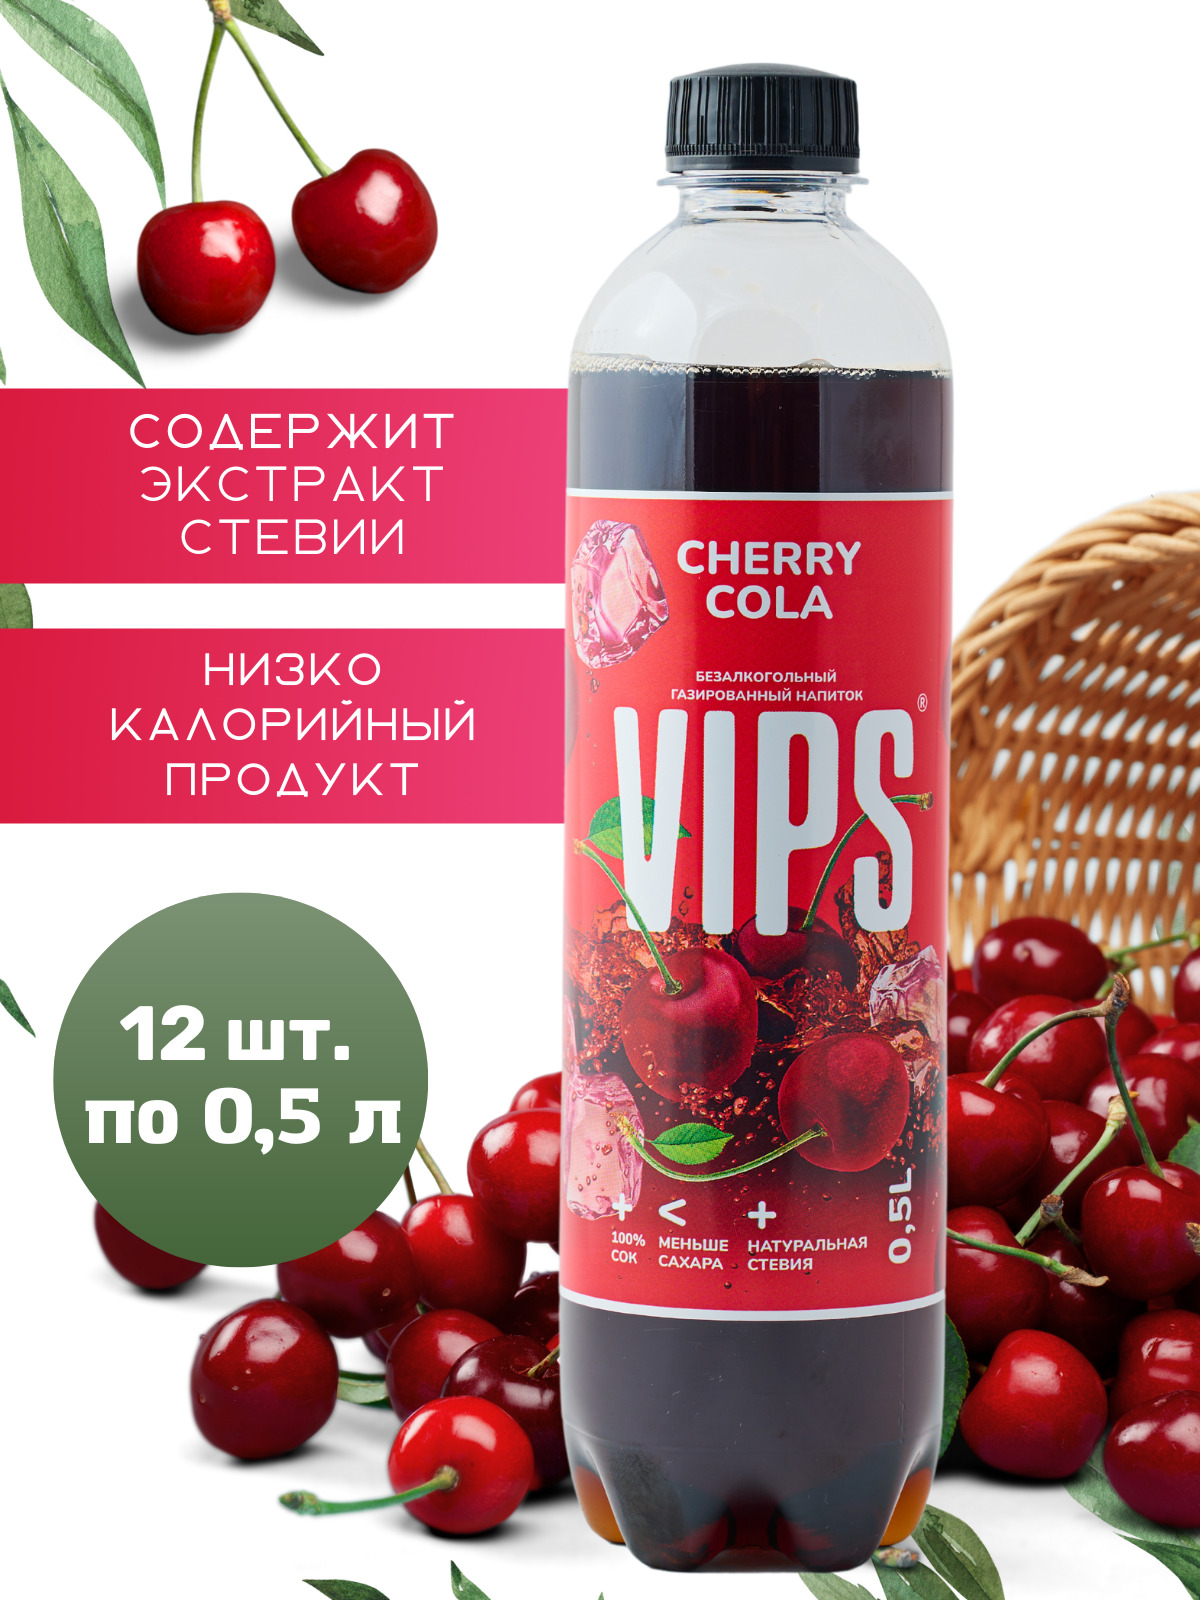 Випс напиток. VIPS Cherry Cola. Напиток ВИПС черри. Мохито ВИПС напиток VIPS. Напиток вип черри кола.